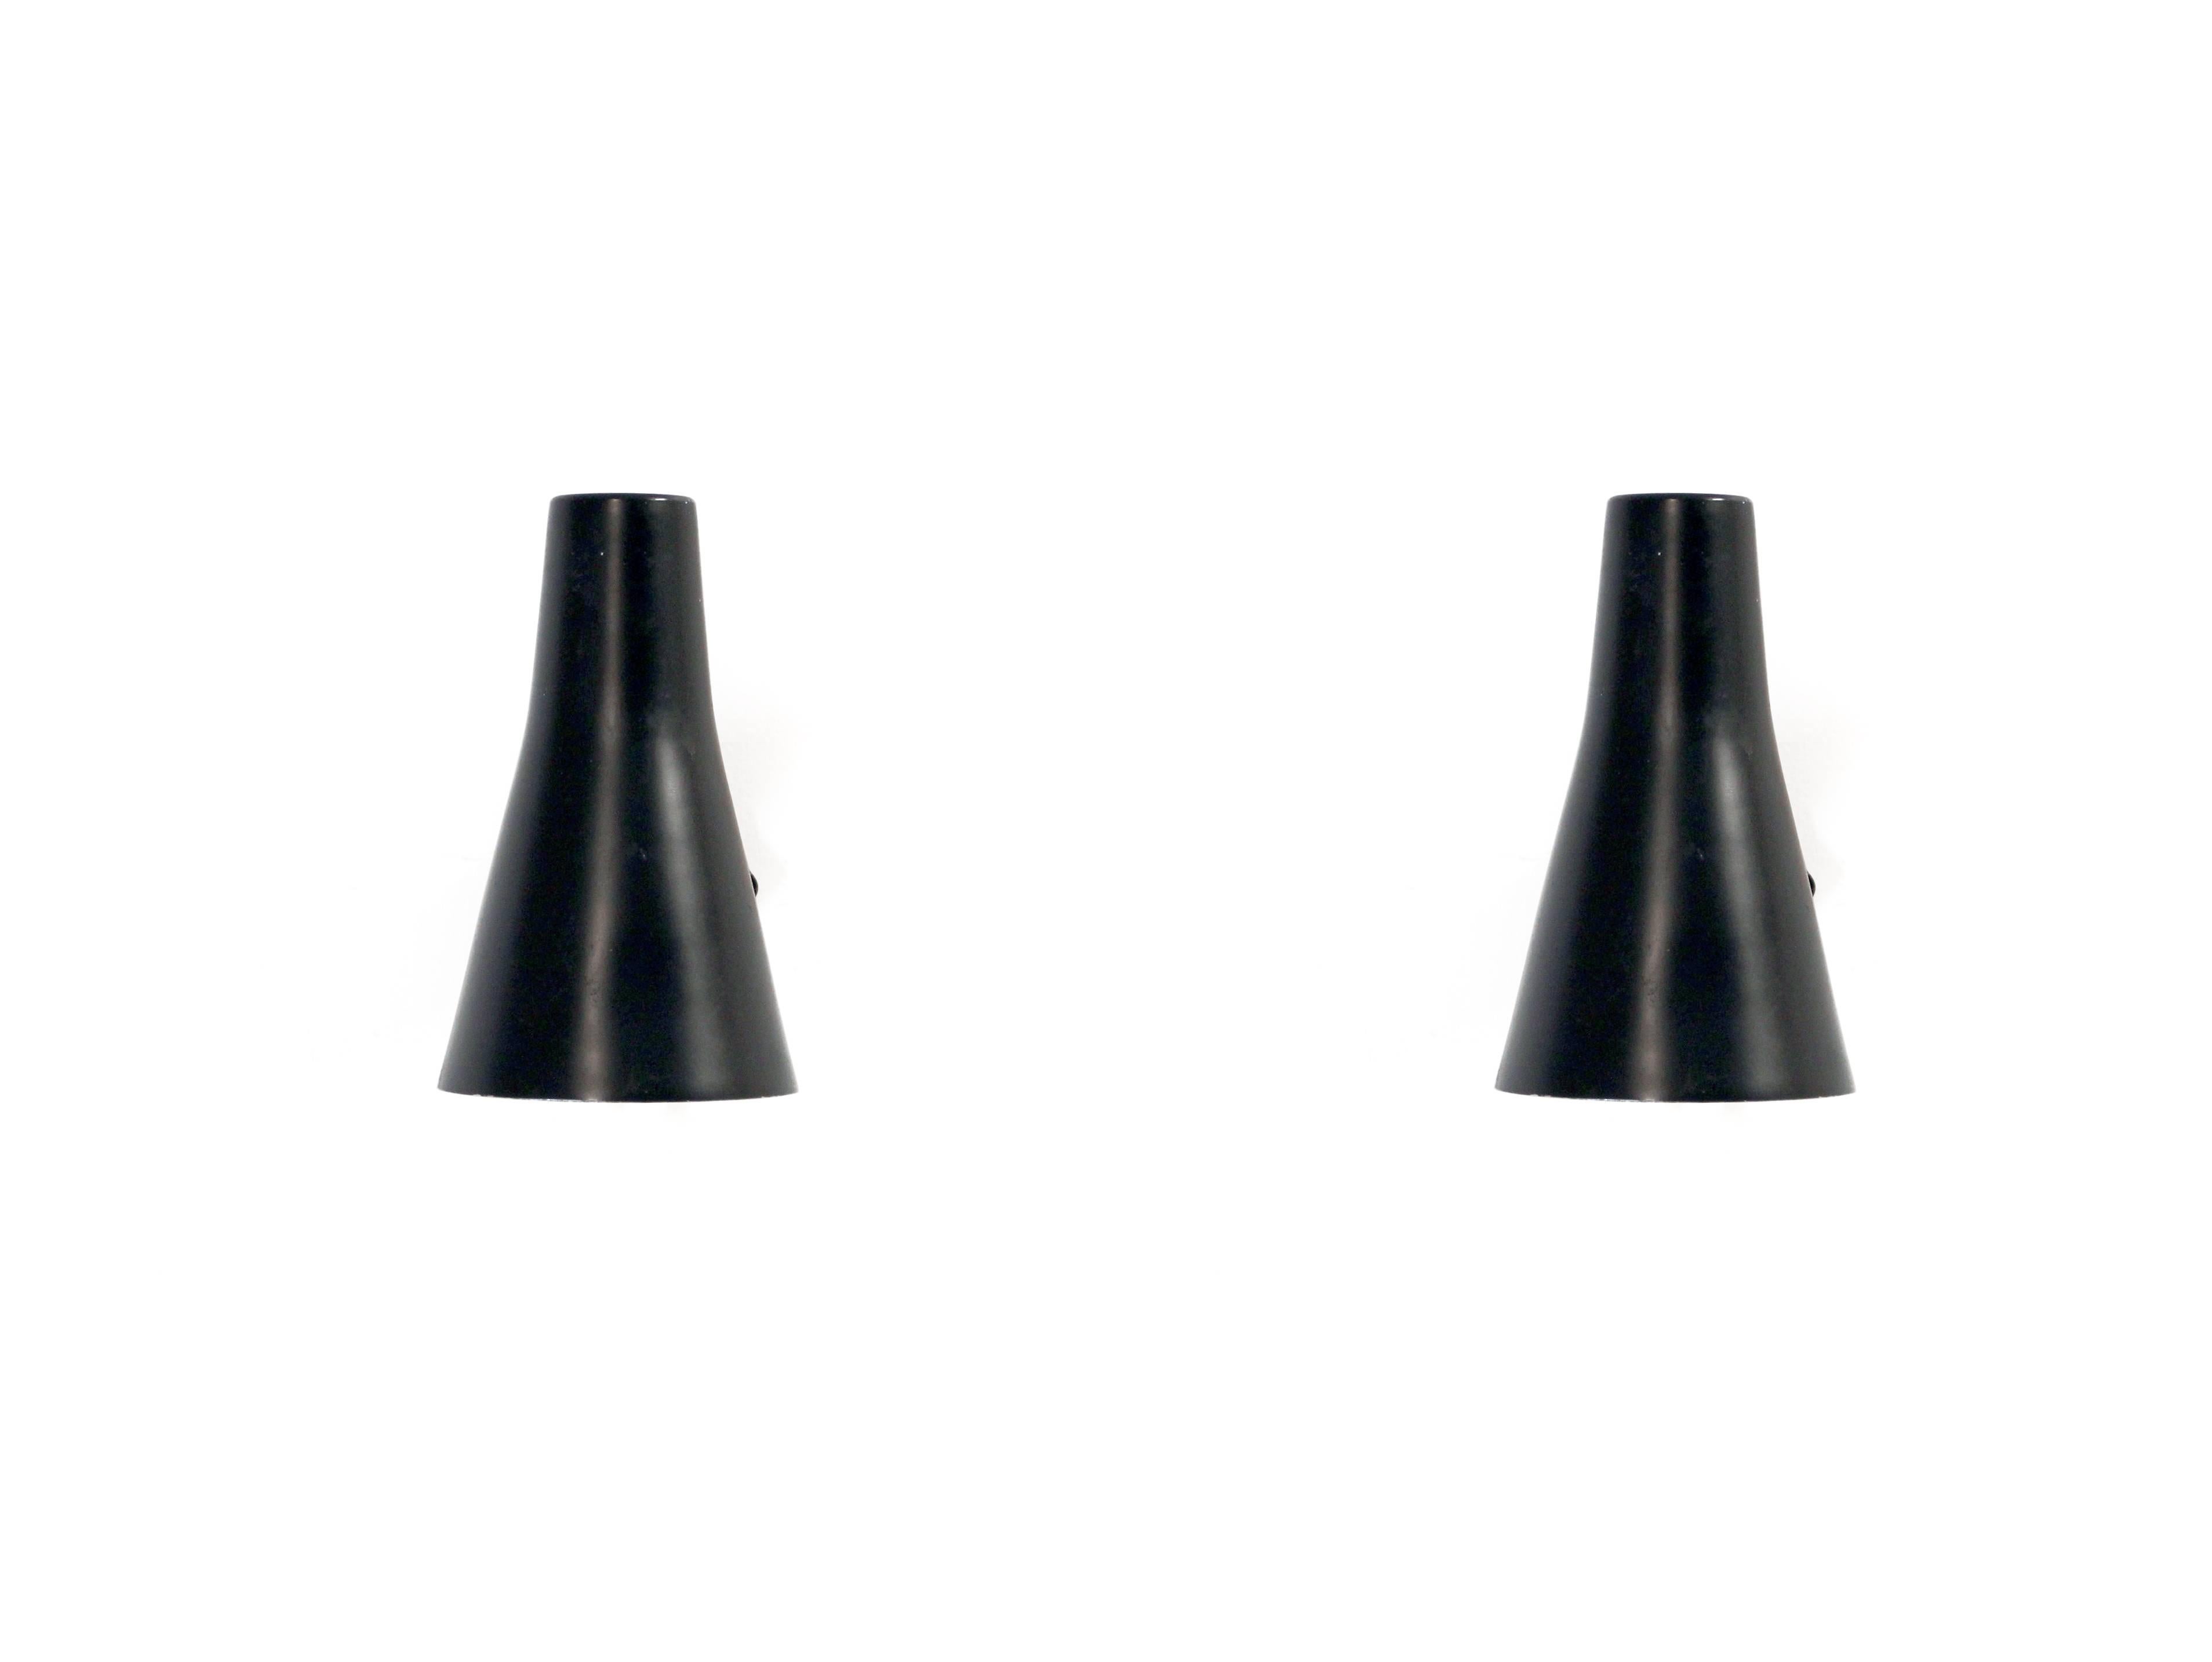 Belle paire d'appliques en acier. Conçu et fabriqué en Suède par ASEA Belysning dans la première moitié des années 1970. Les deux lampes fonctionnent parfaitement et sont en bon état.